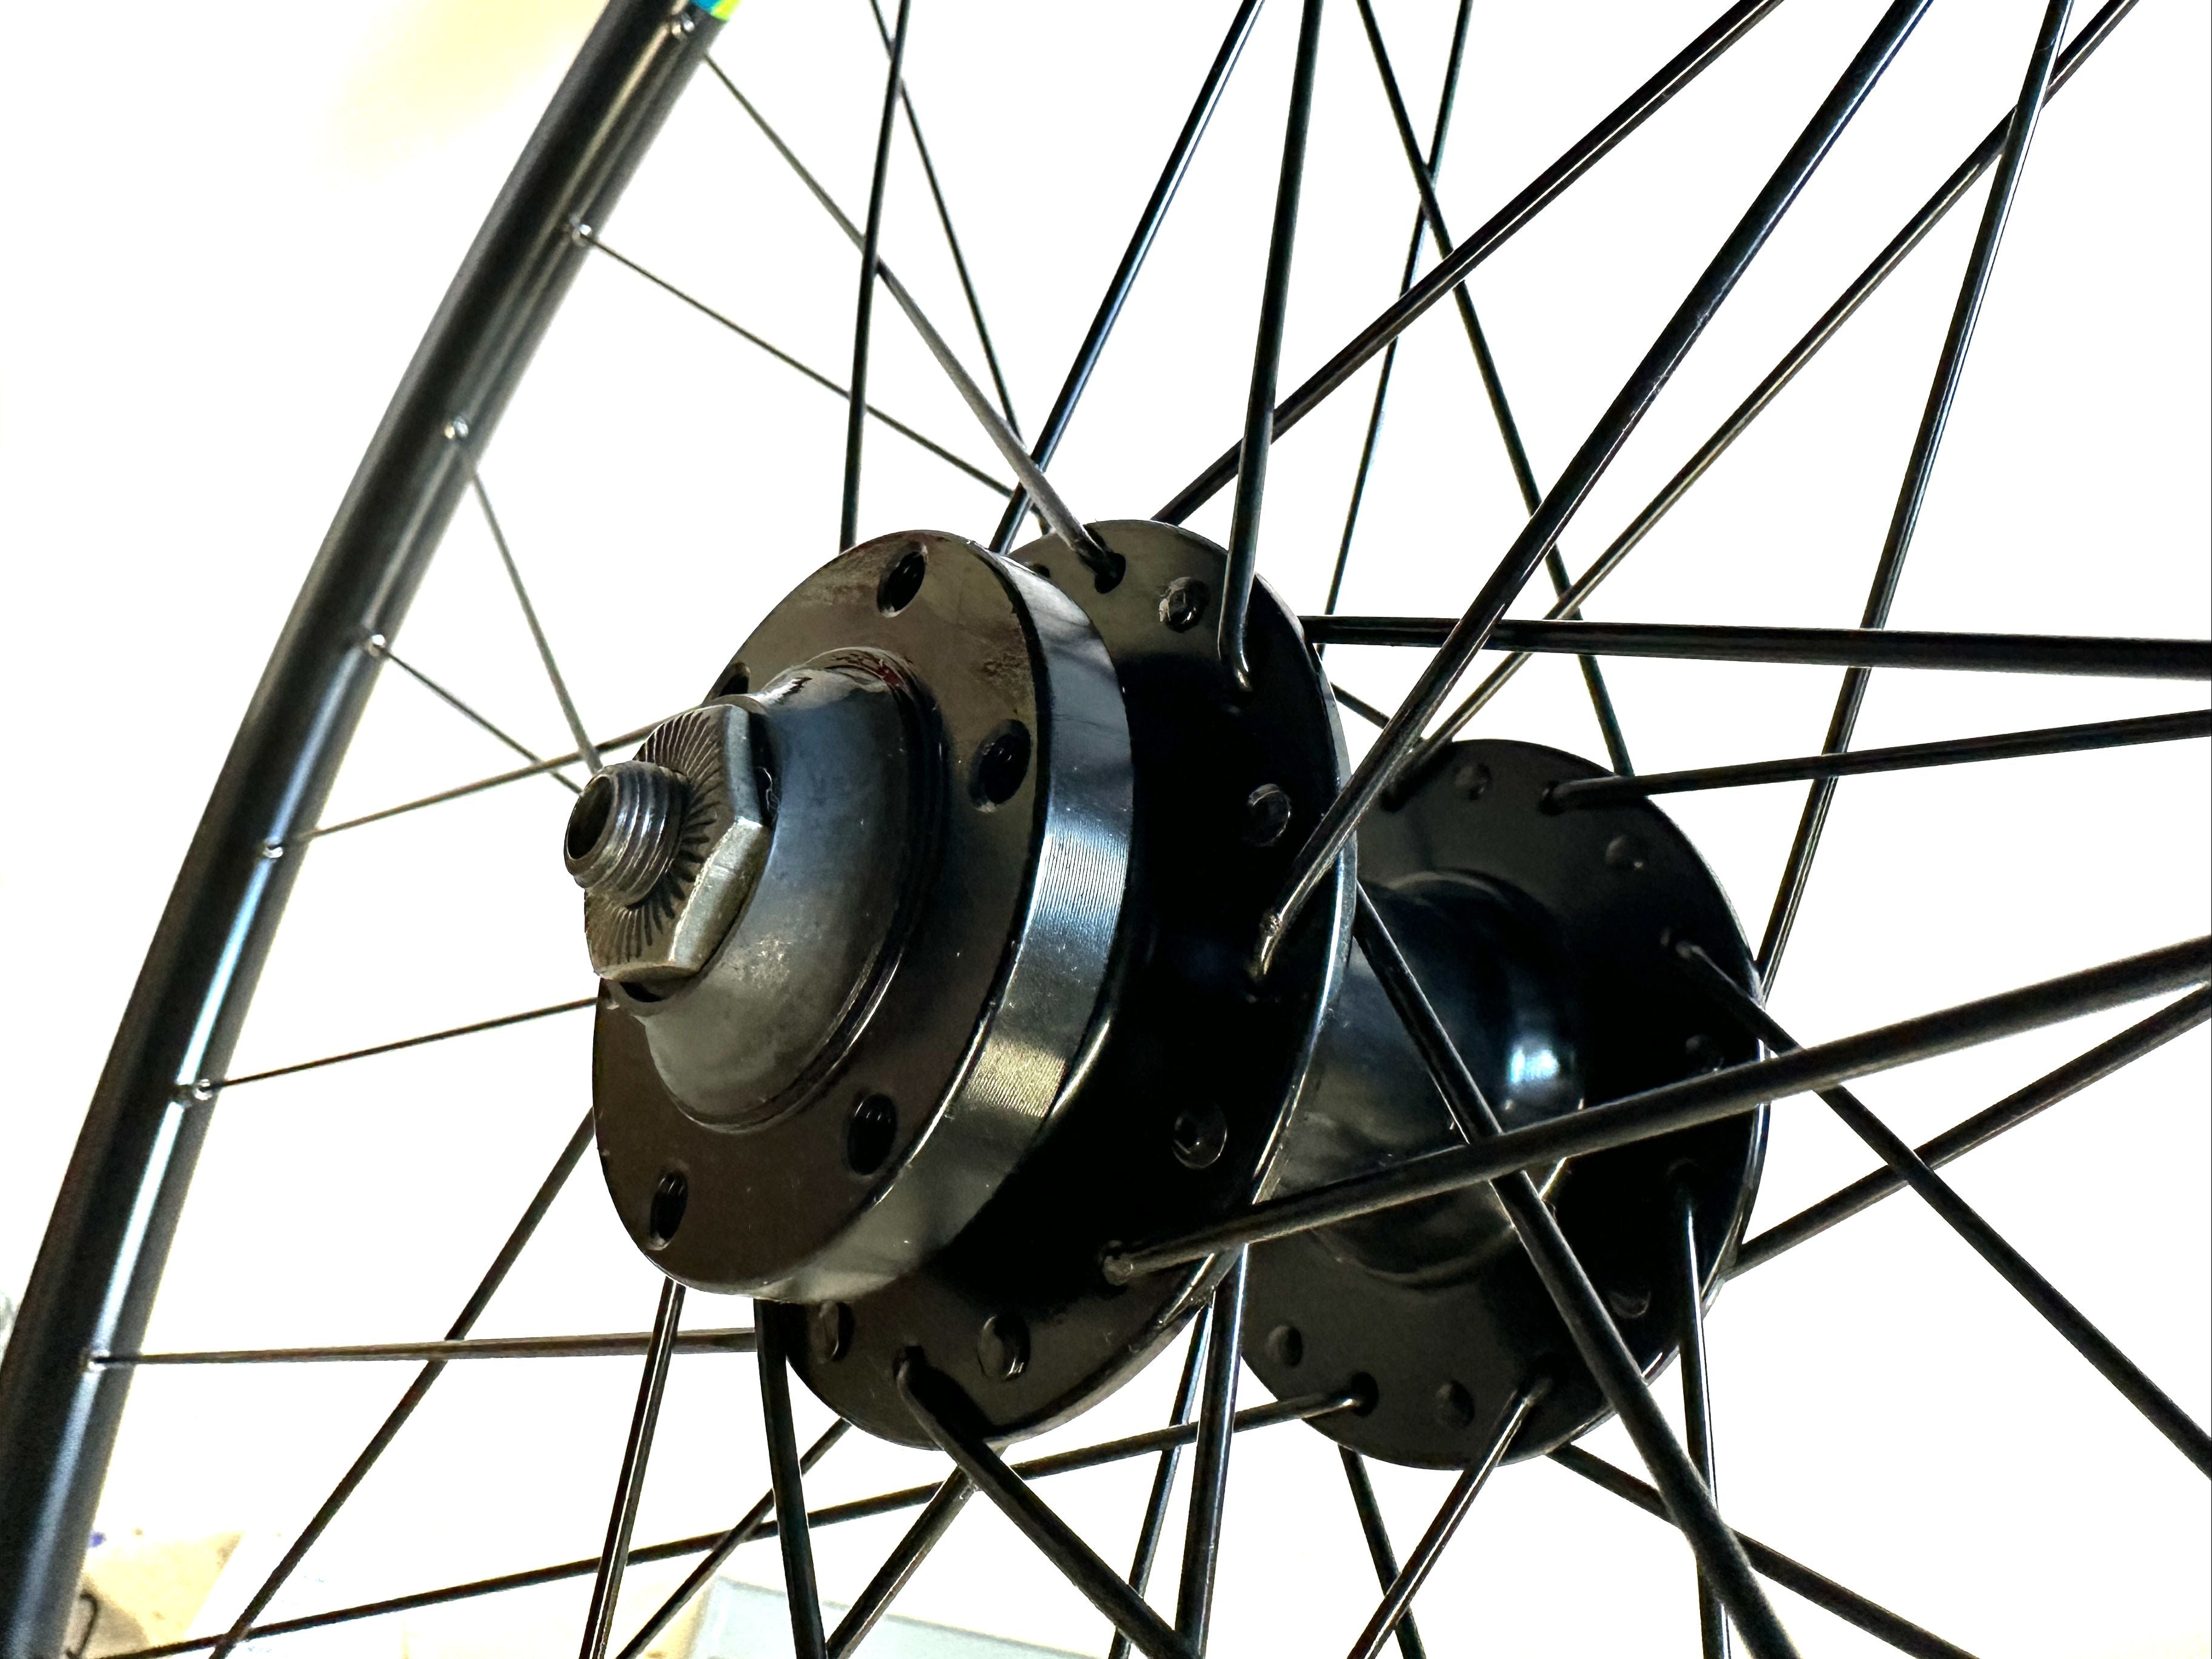 700c Frt Front Disc Brake Road Commuter Gravel Bike Alloy Wheel QR Q/R Black New